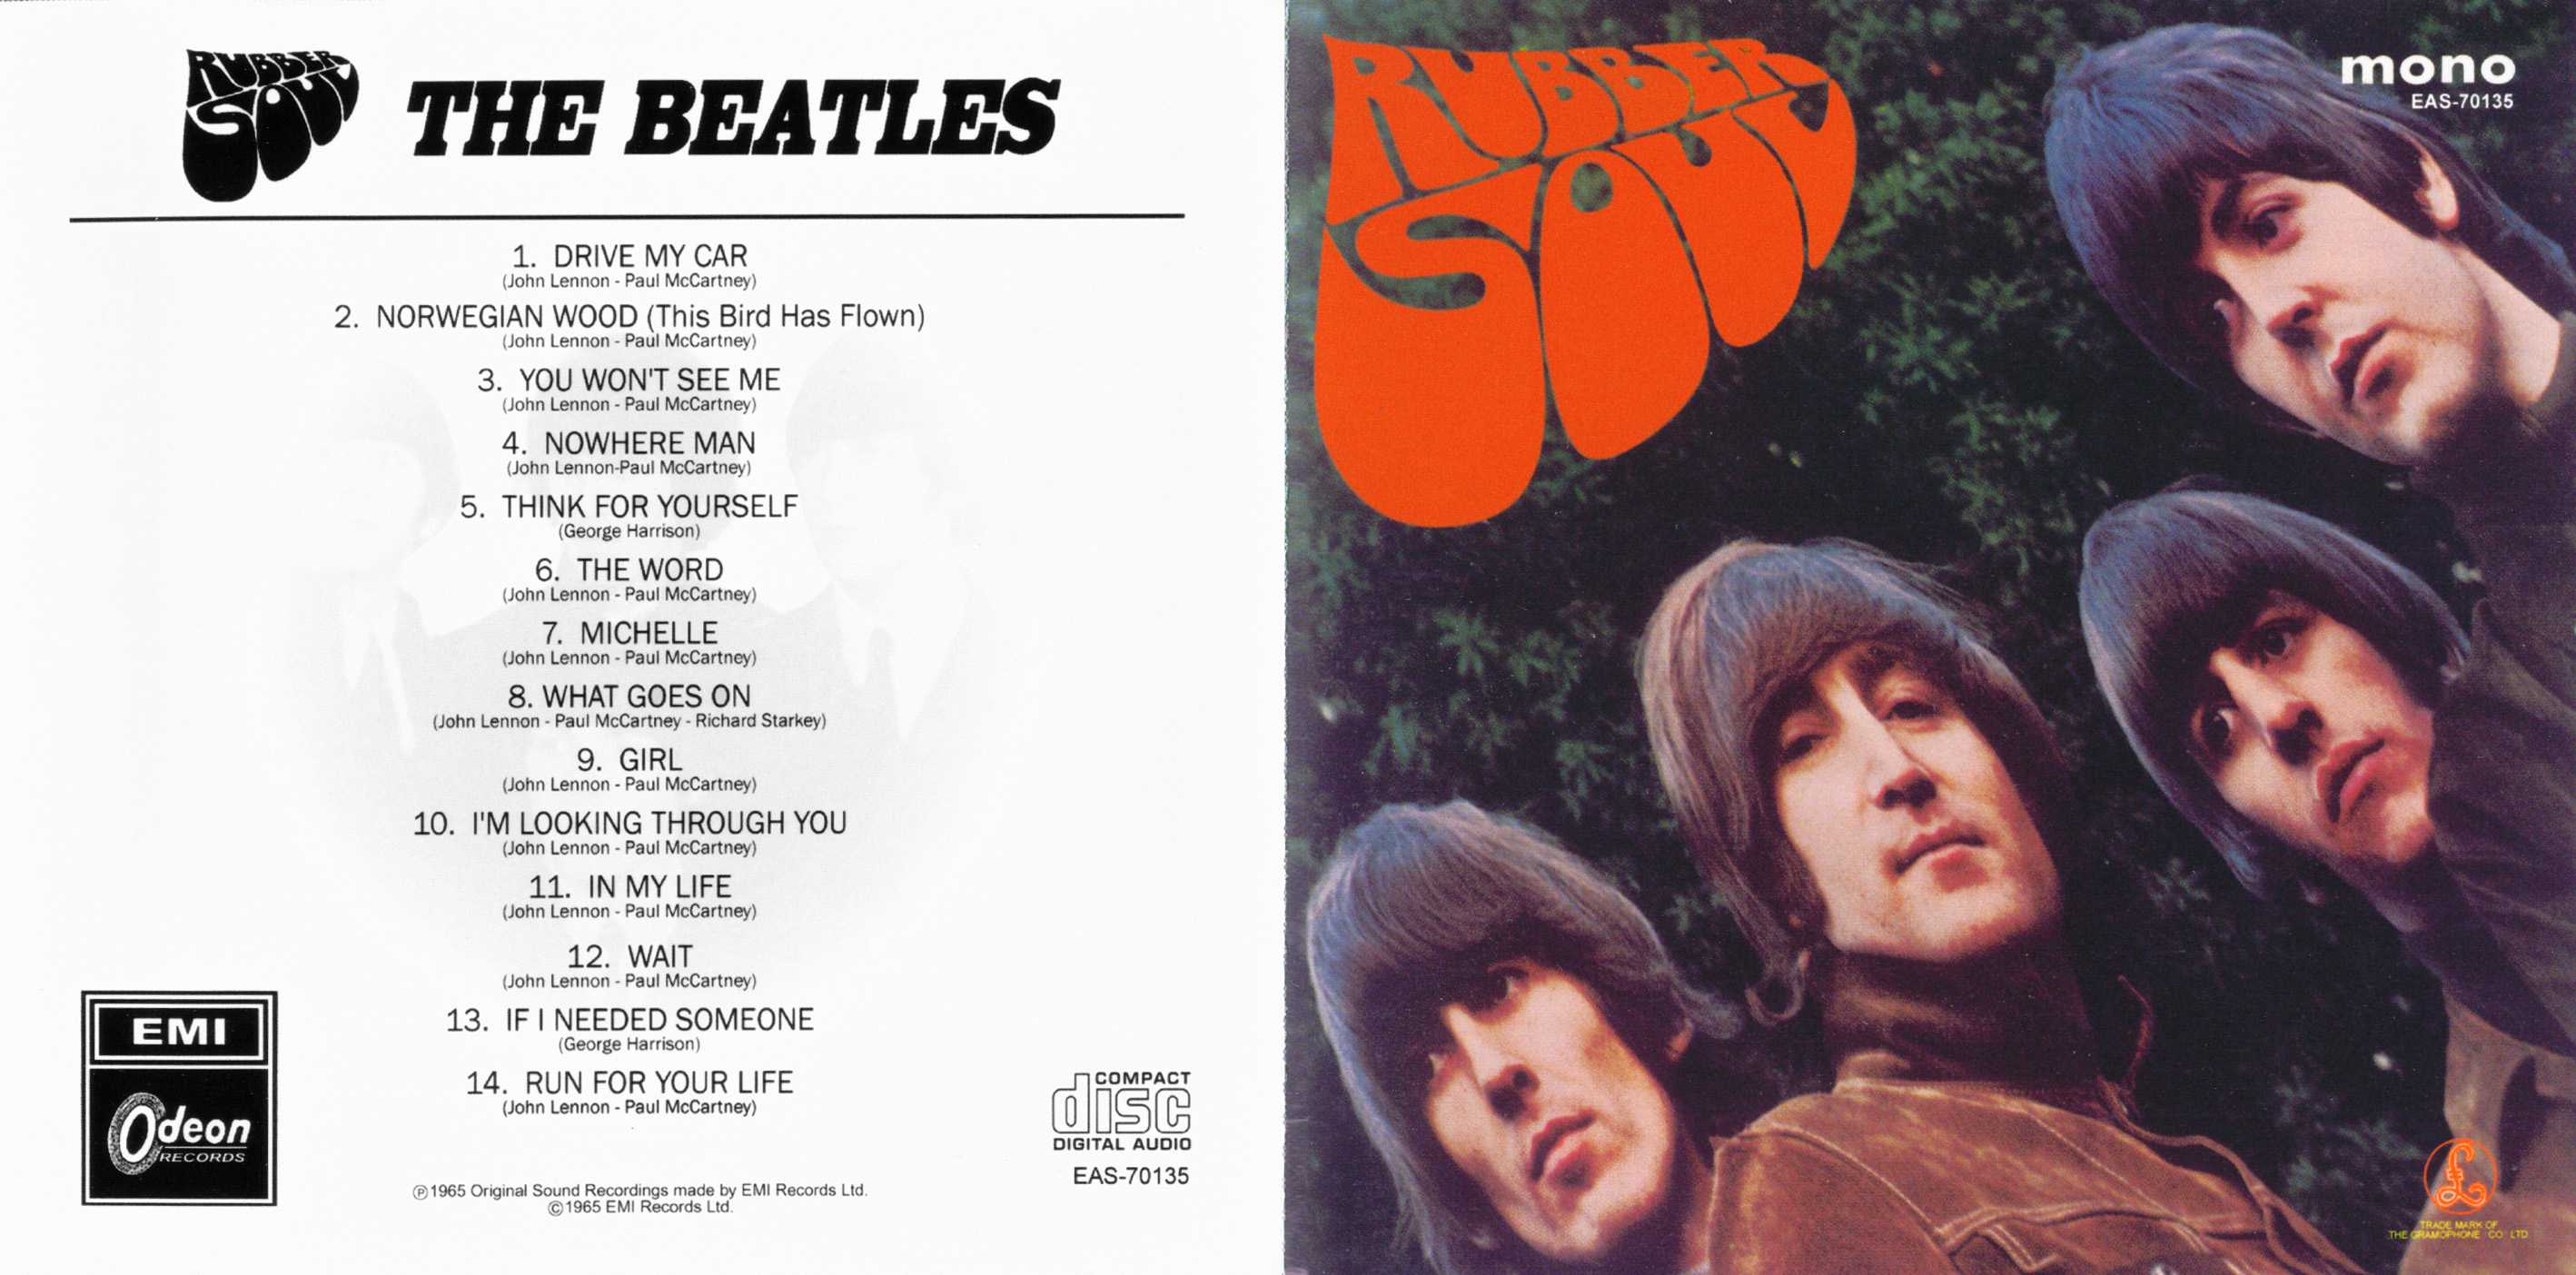 Rubber Soul the Beatles обложка. The Beatles Rubber Soul 1965 обложка. Джон Леннон Rubber Soul. The Beatles резиновая душа. Песни гр душа